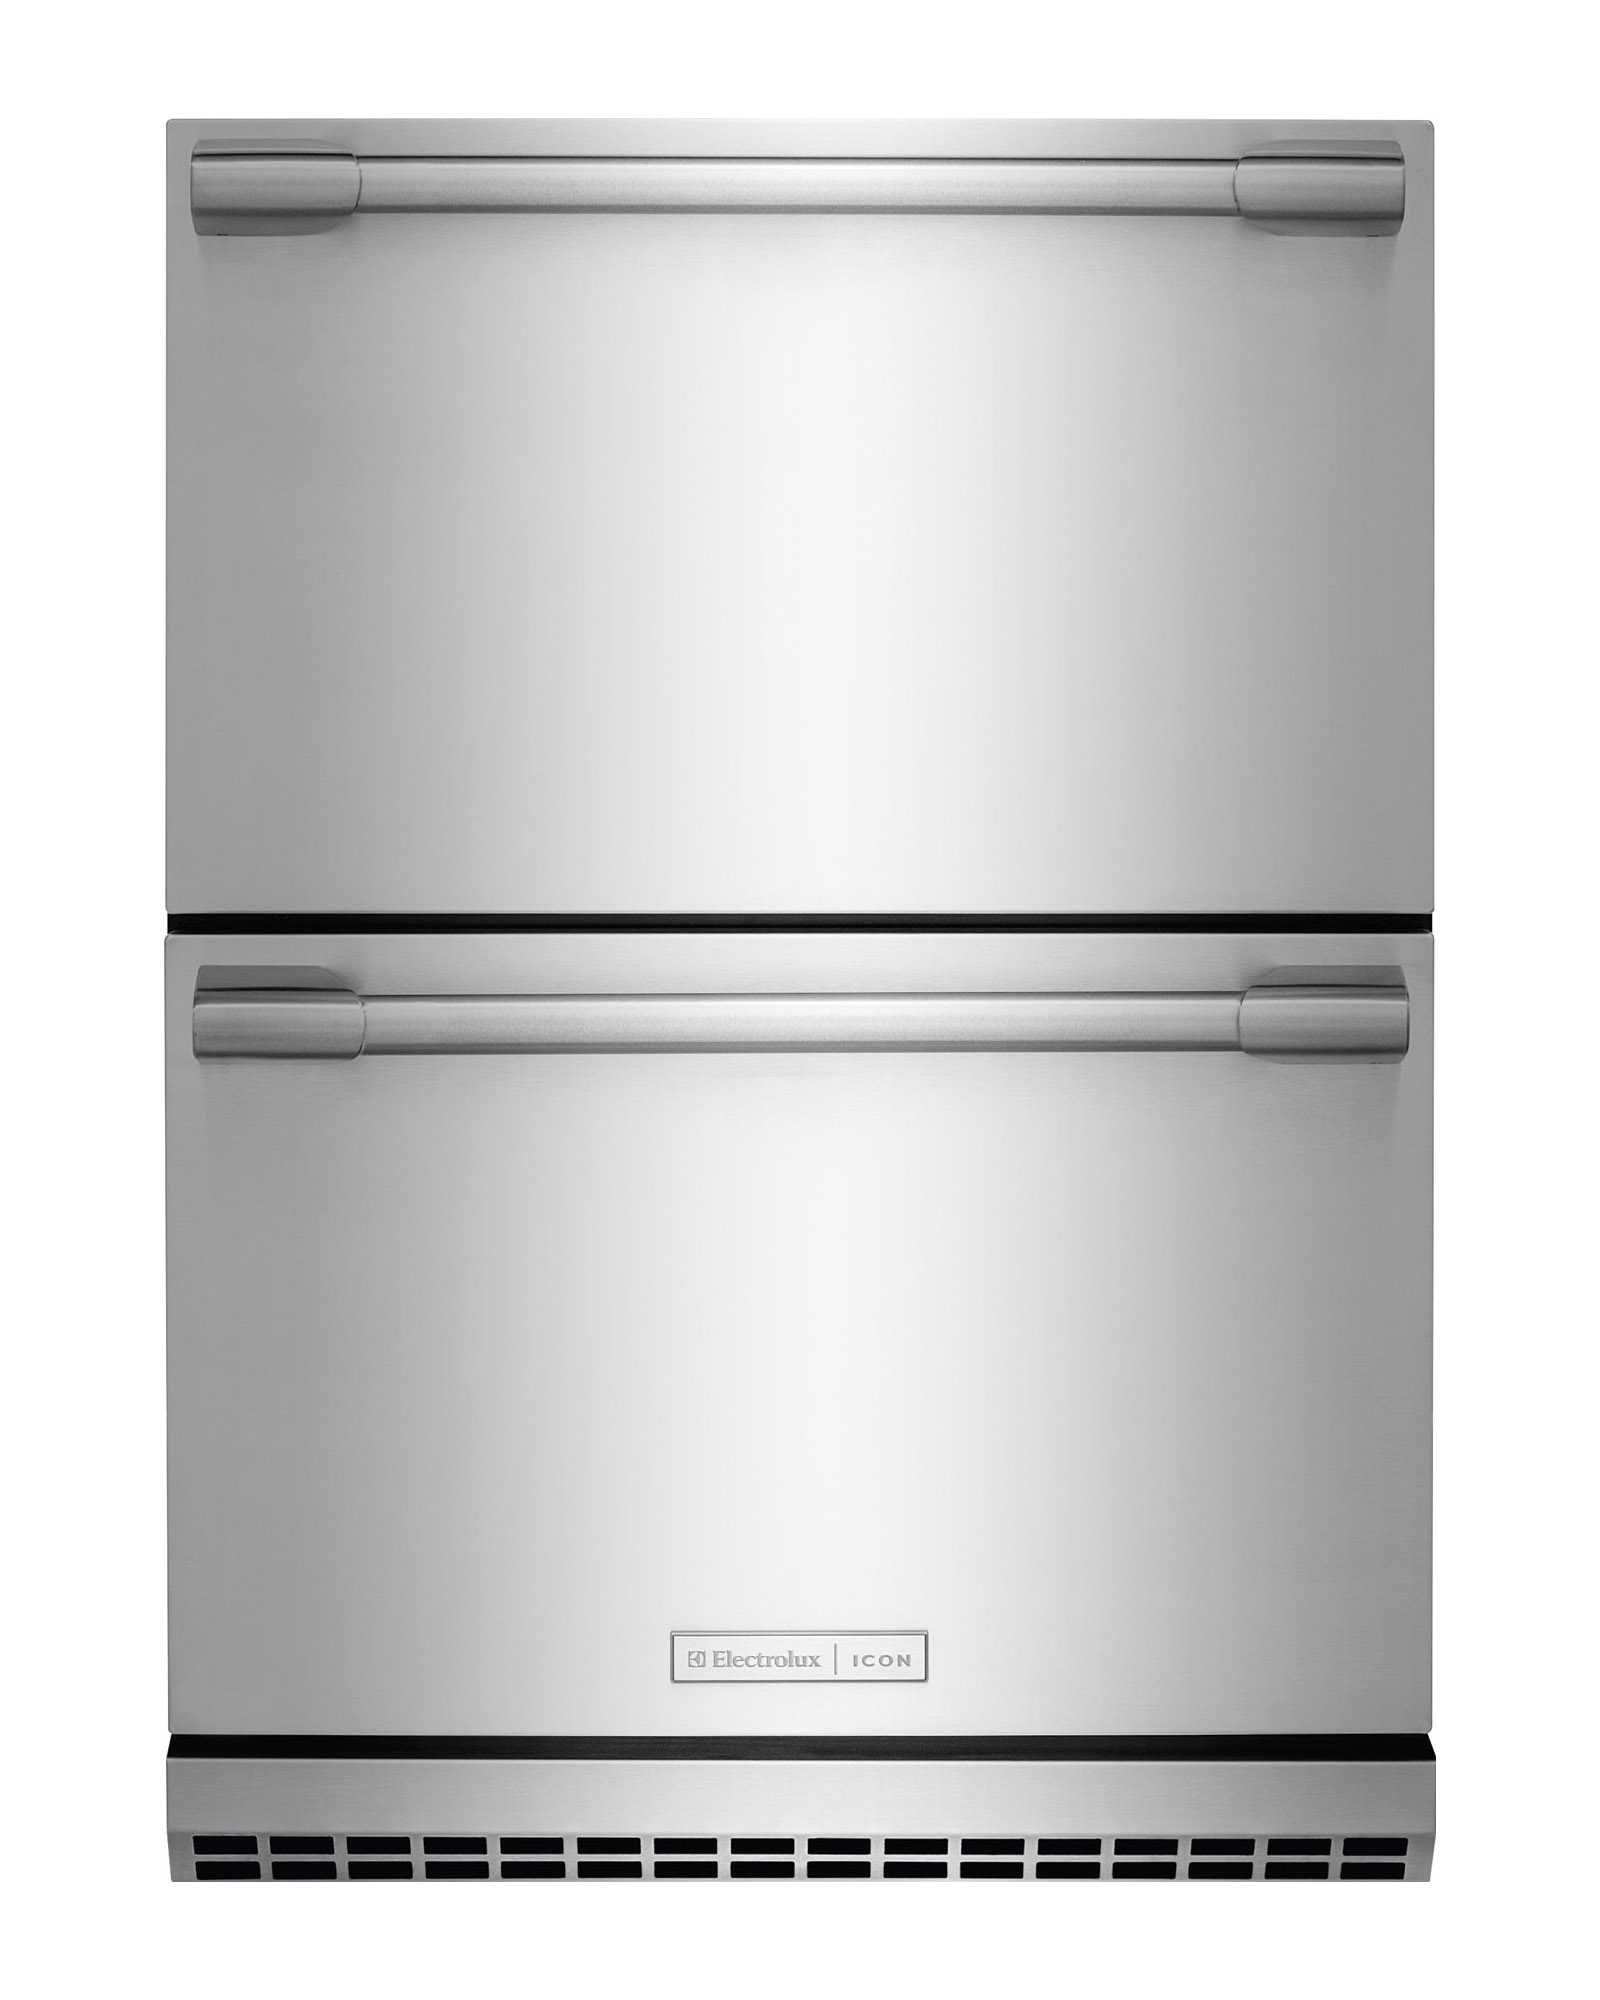 Two-Drawer Refrigerator logo